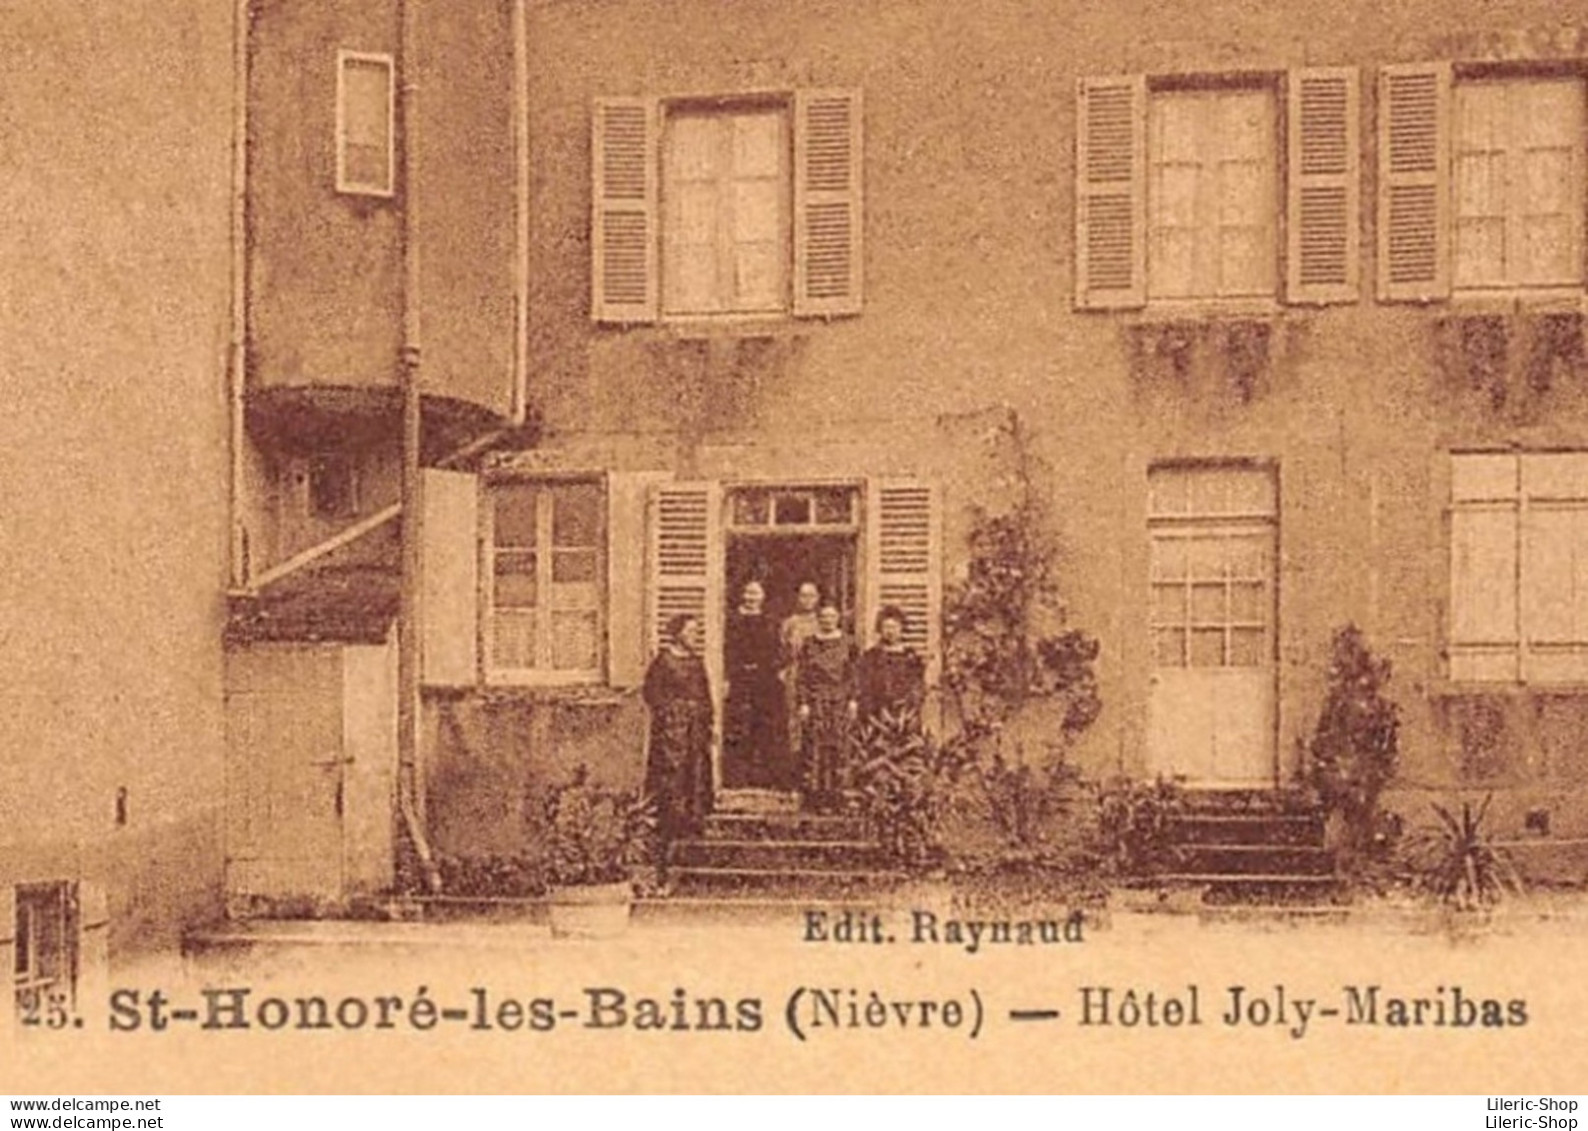 ►SAINT-HONORÉ-LES-BAINS◄58►CPA►±1910◄►HÔTEL JOLY-MARIBAS►ÉDIT. RAYNAUD No 25◄ - Saint-Honoré-les-Bains